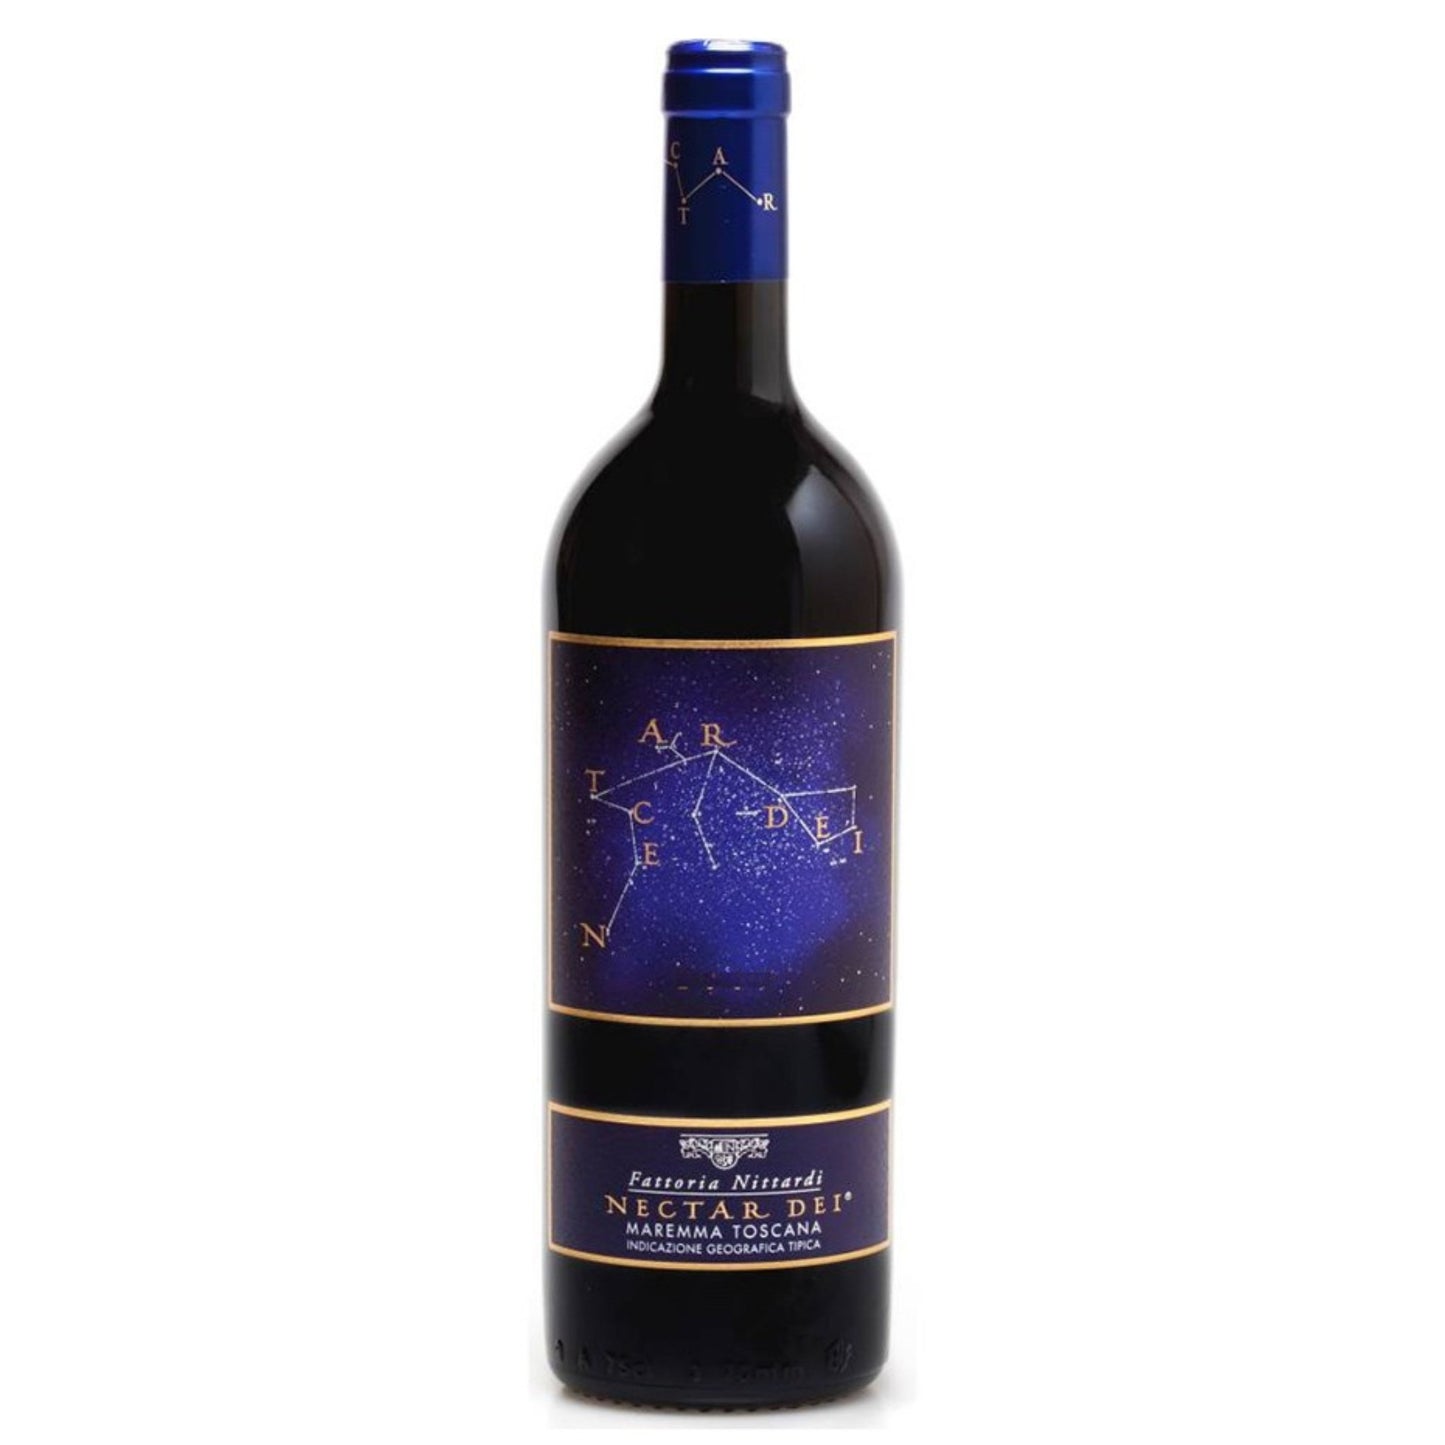 Nittardi Nectar Dei 1500ml - Grand Vin Pte Ltd